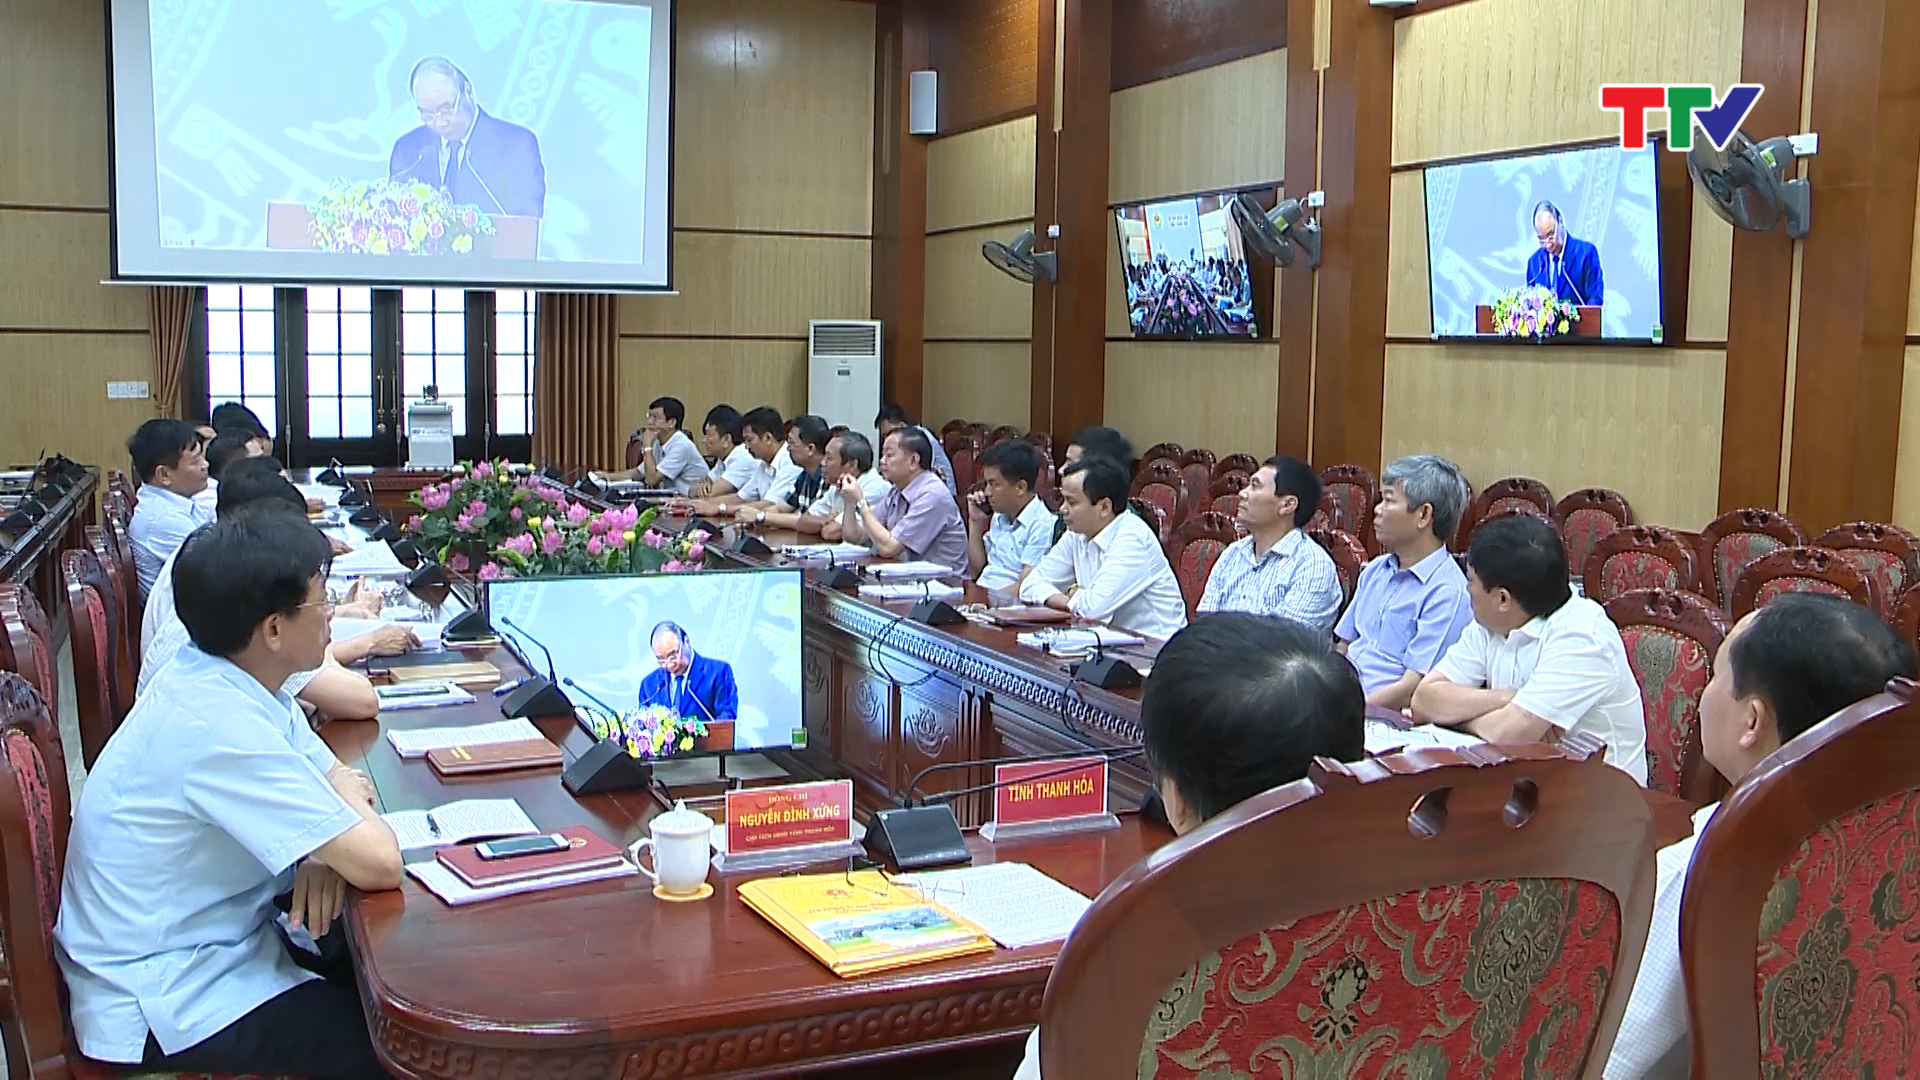 Thủ tướng Nguyễn Xuân Phúc  yêu cầu các Bộ trưởng và lãnh đạo các địa phương phải trăn trở, trách nhiệm, sáng tạo, quyết liệt trong chỉ đạo, điều hành để đóng góp tích cực cho sự tăng trưởng của đất nước.